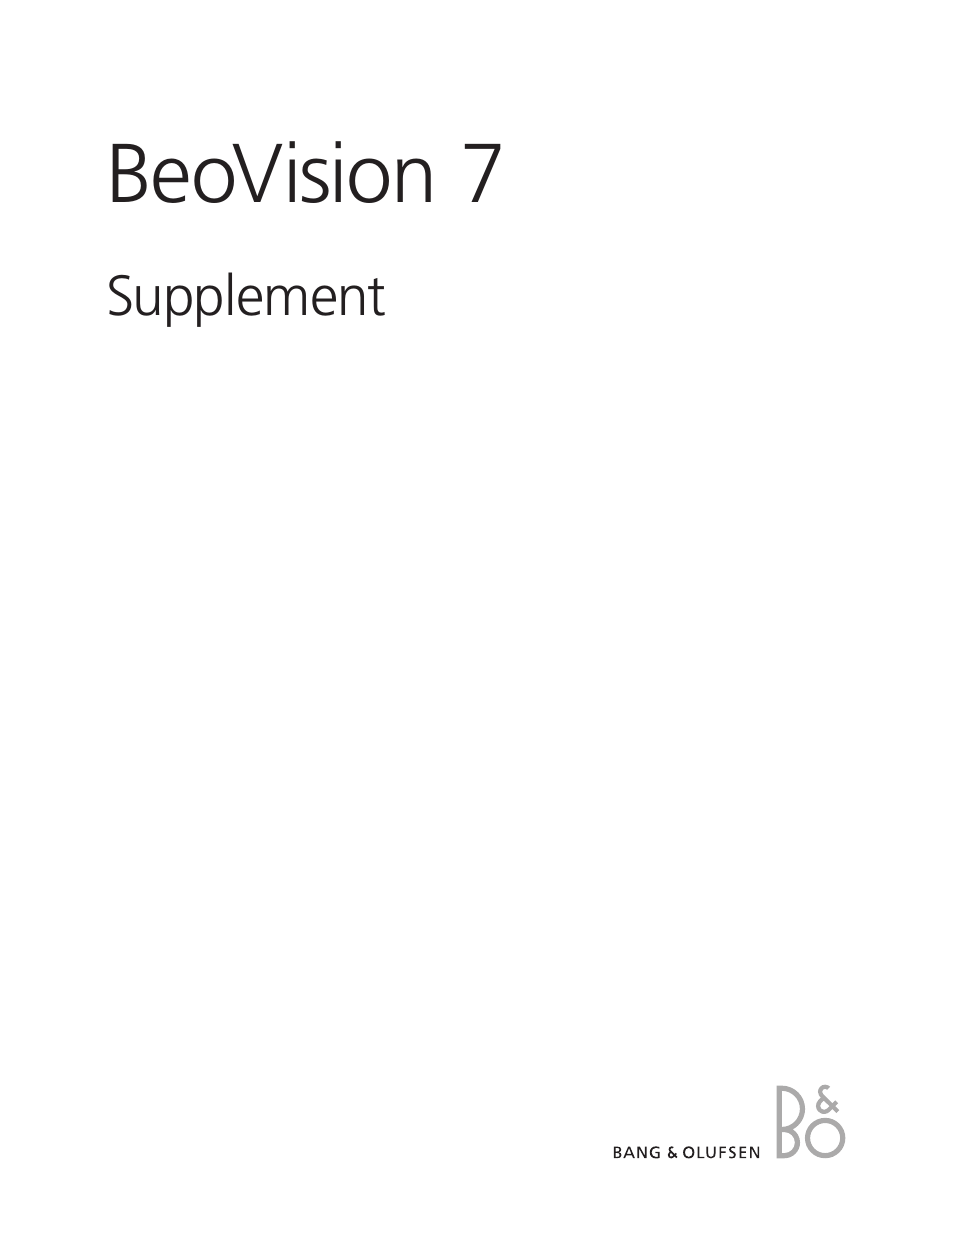 BeoVision 7-32 Supplement